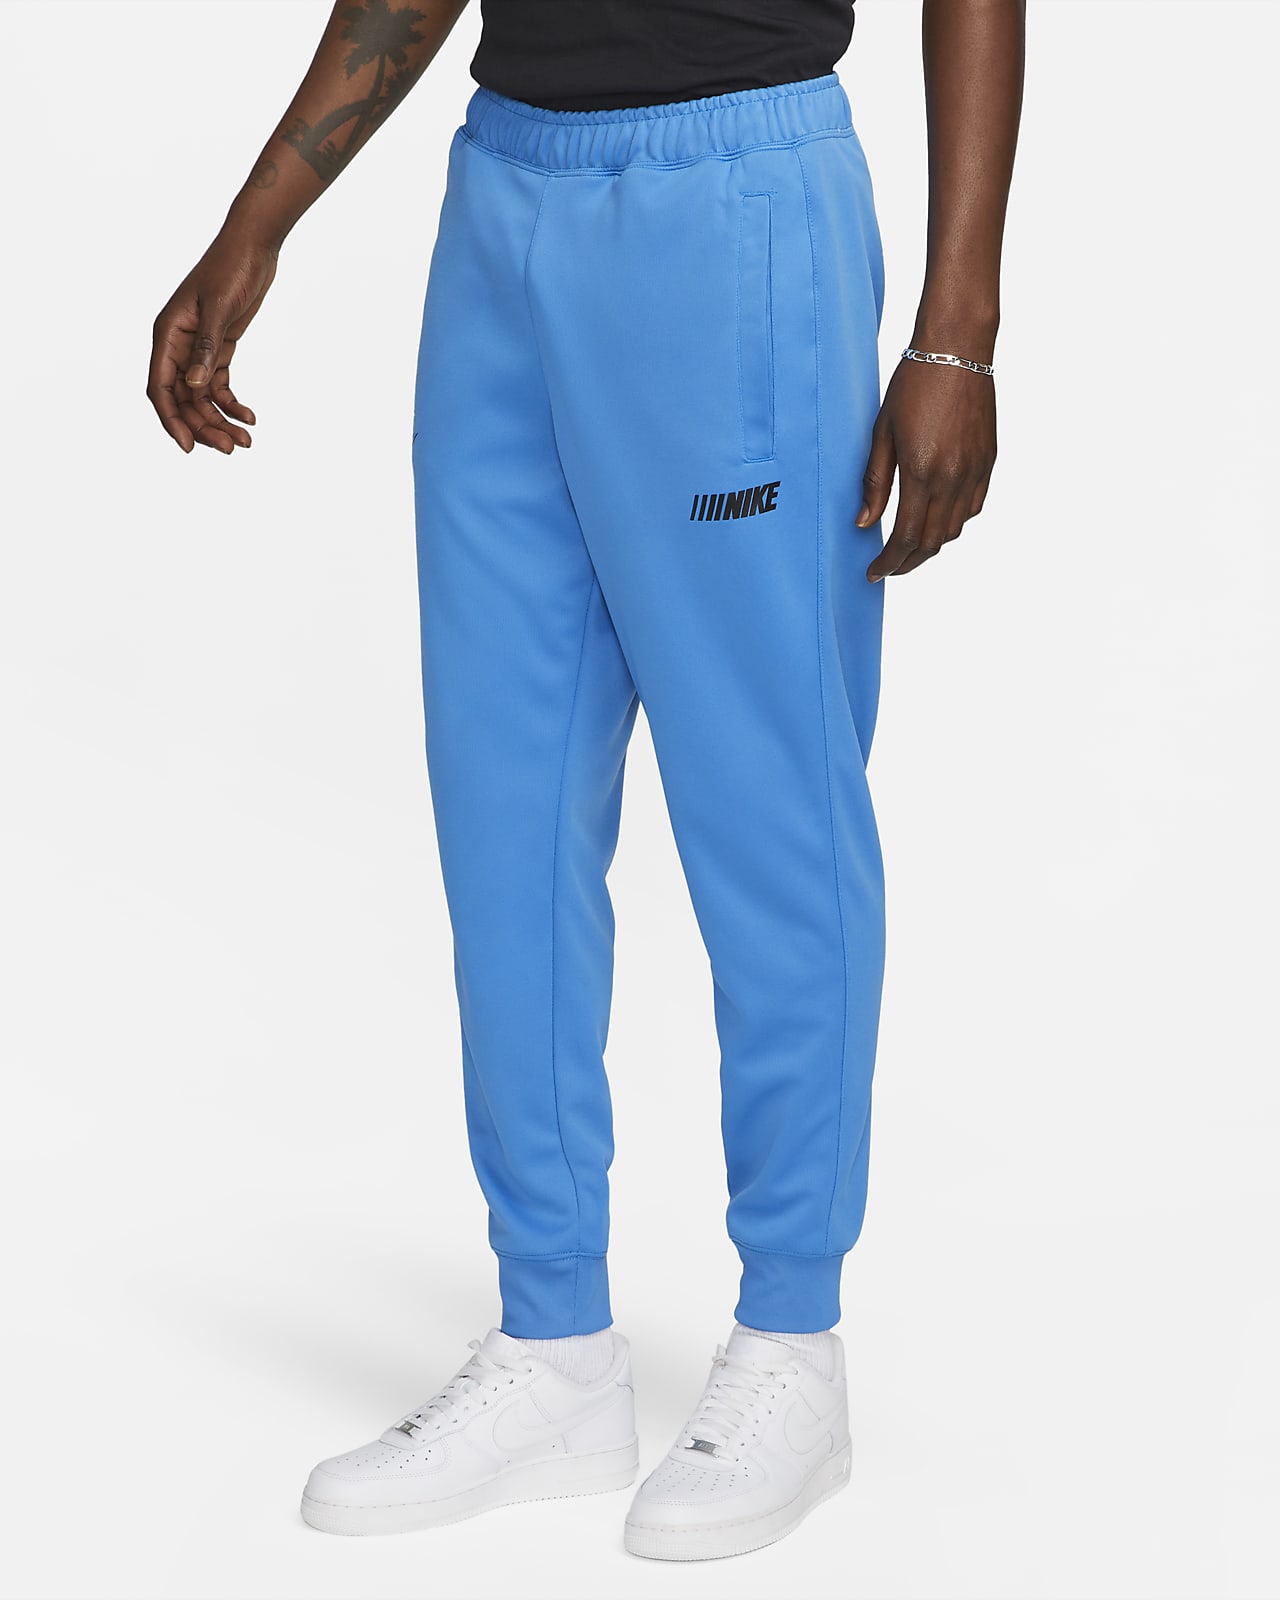 metriek het winkelcentrum Fotoelektrisch Nike Sportswear Standard Issue Men's Trousers. Nike LU